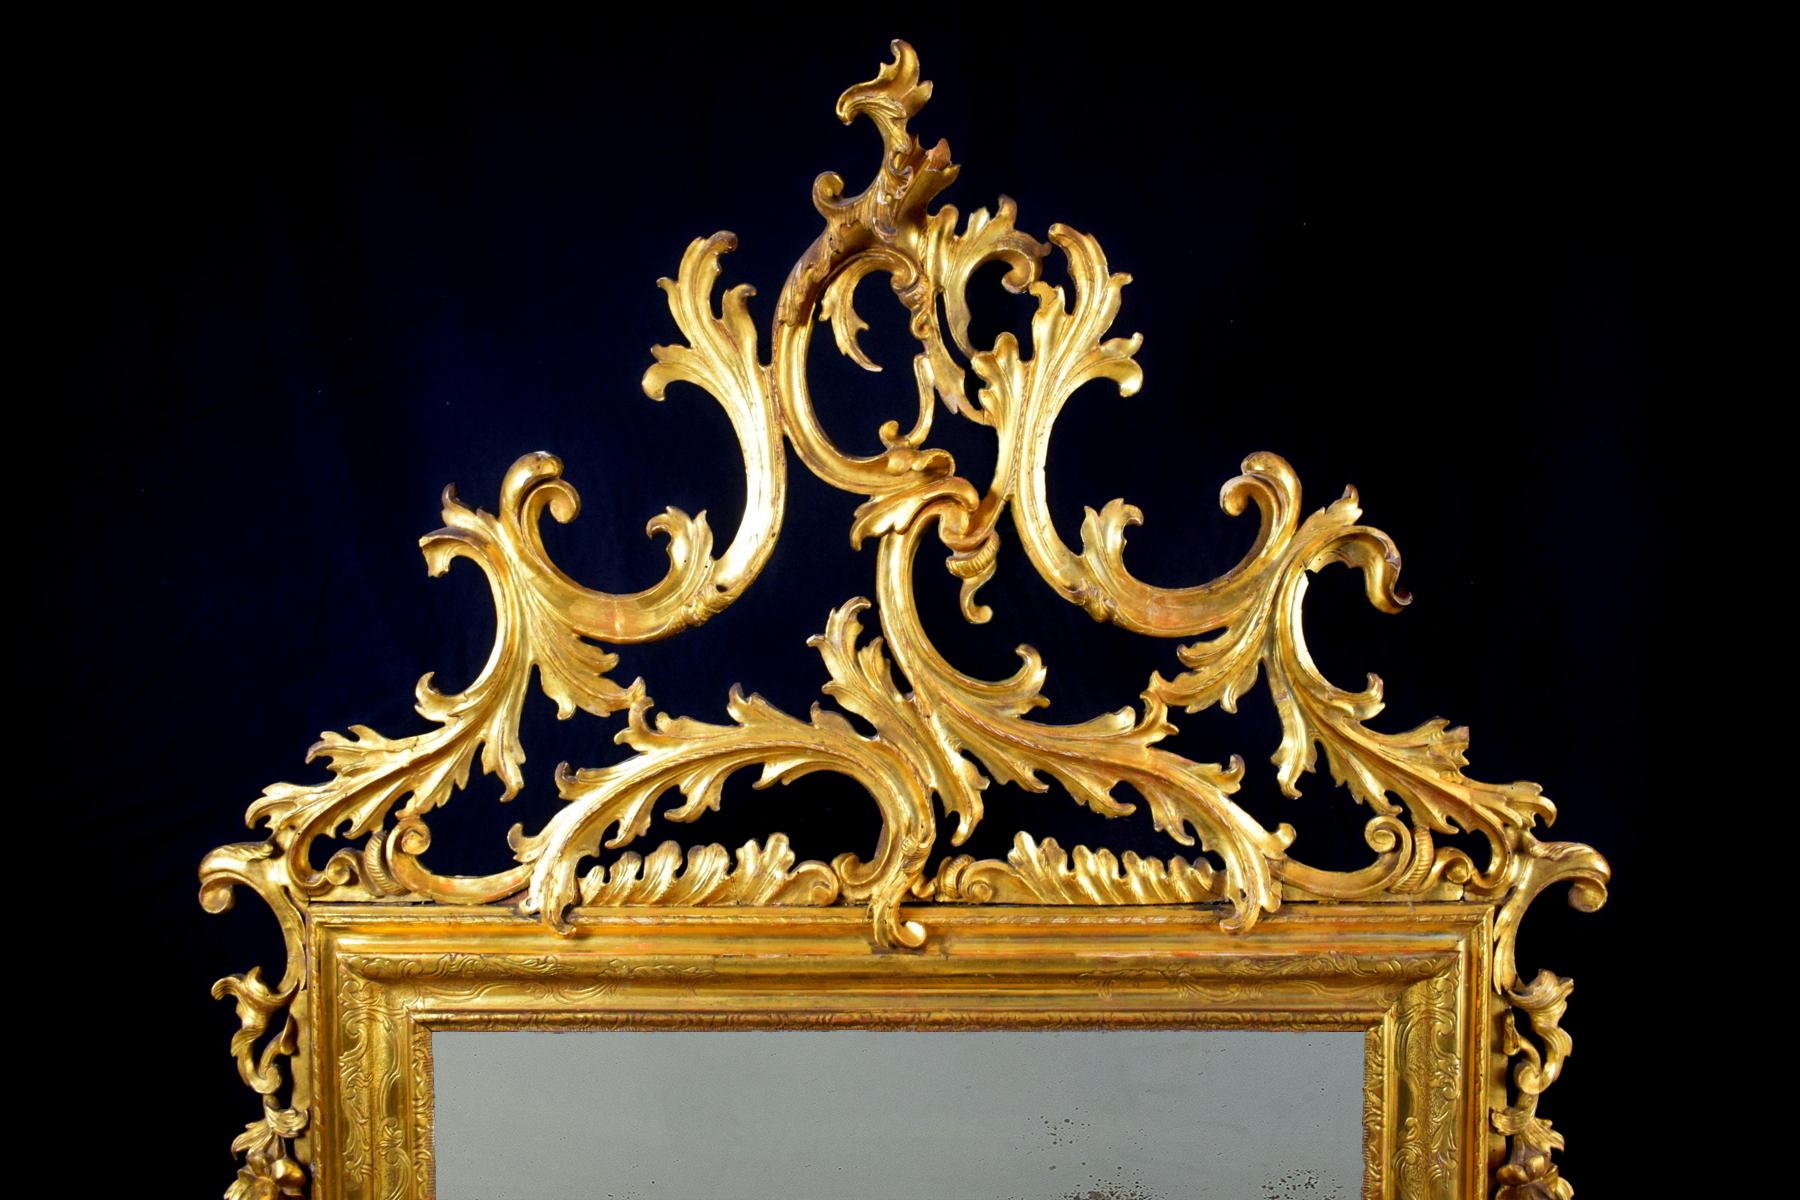 Miroir vénitien du XVIIIe siècle en bois sculpté et doré

Ce grand miroir en bois sculpté et doré a été fabriqué en Italie, à Venise, dans la première moitié du XVIIIe siècle.
Il est doté d'un cadre central rectangulaire et moulé. Du cadre